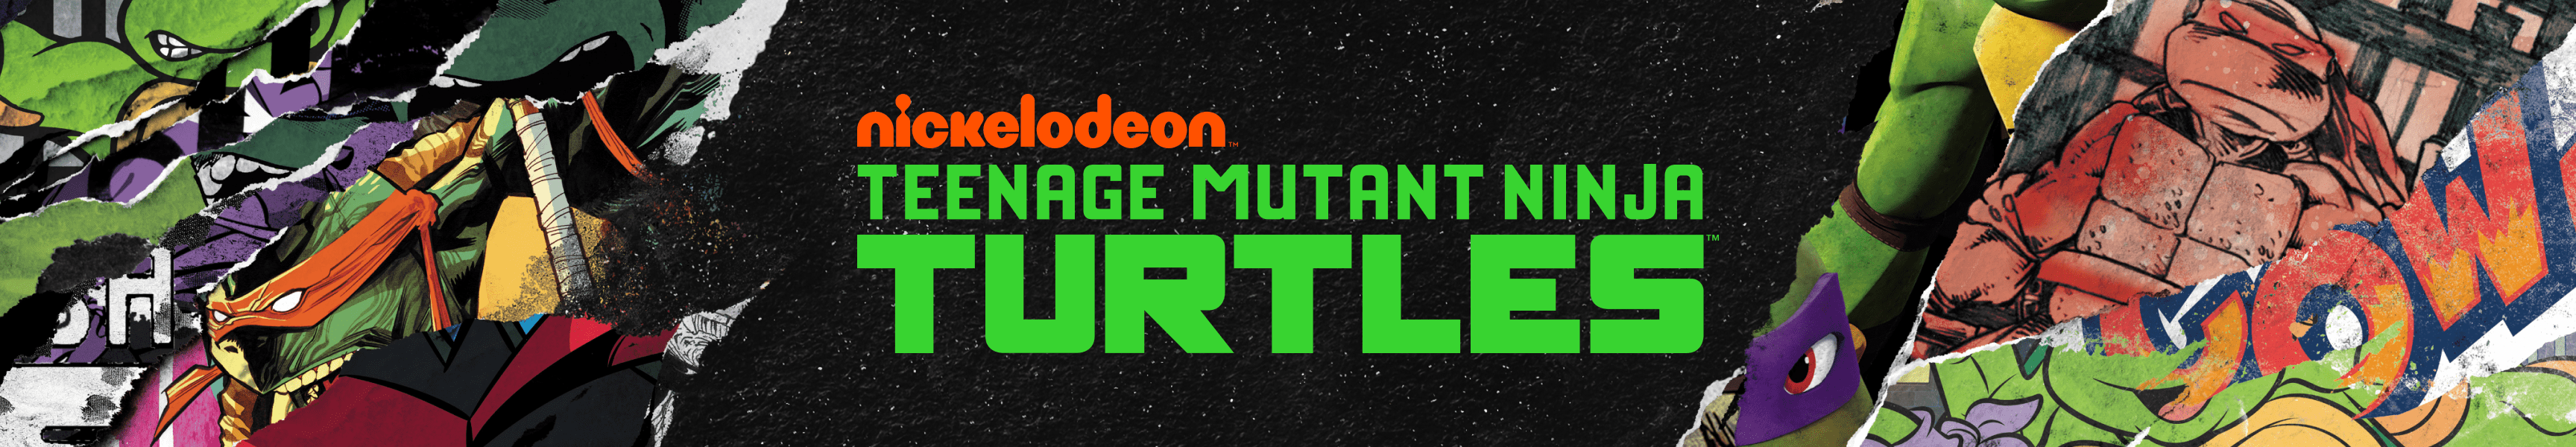 Teenage Mutant Ninja Turtles Tumblers